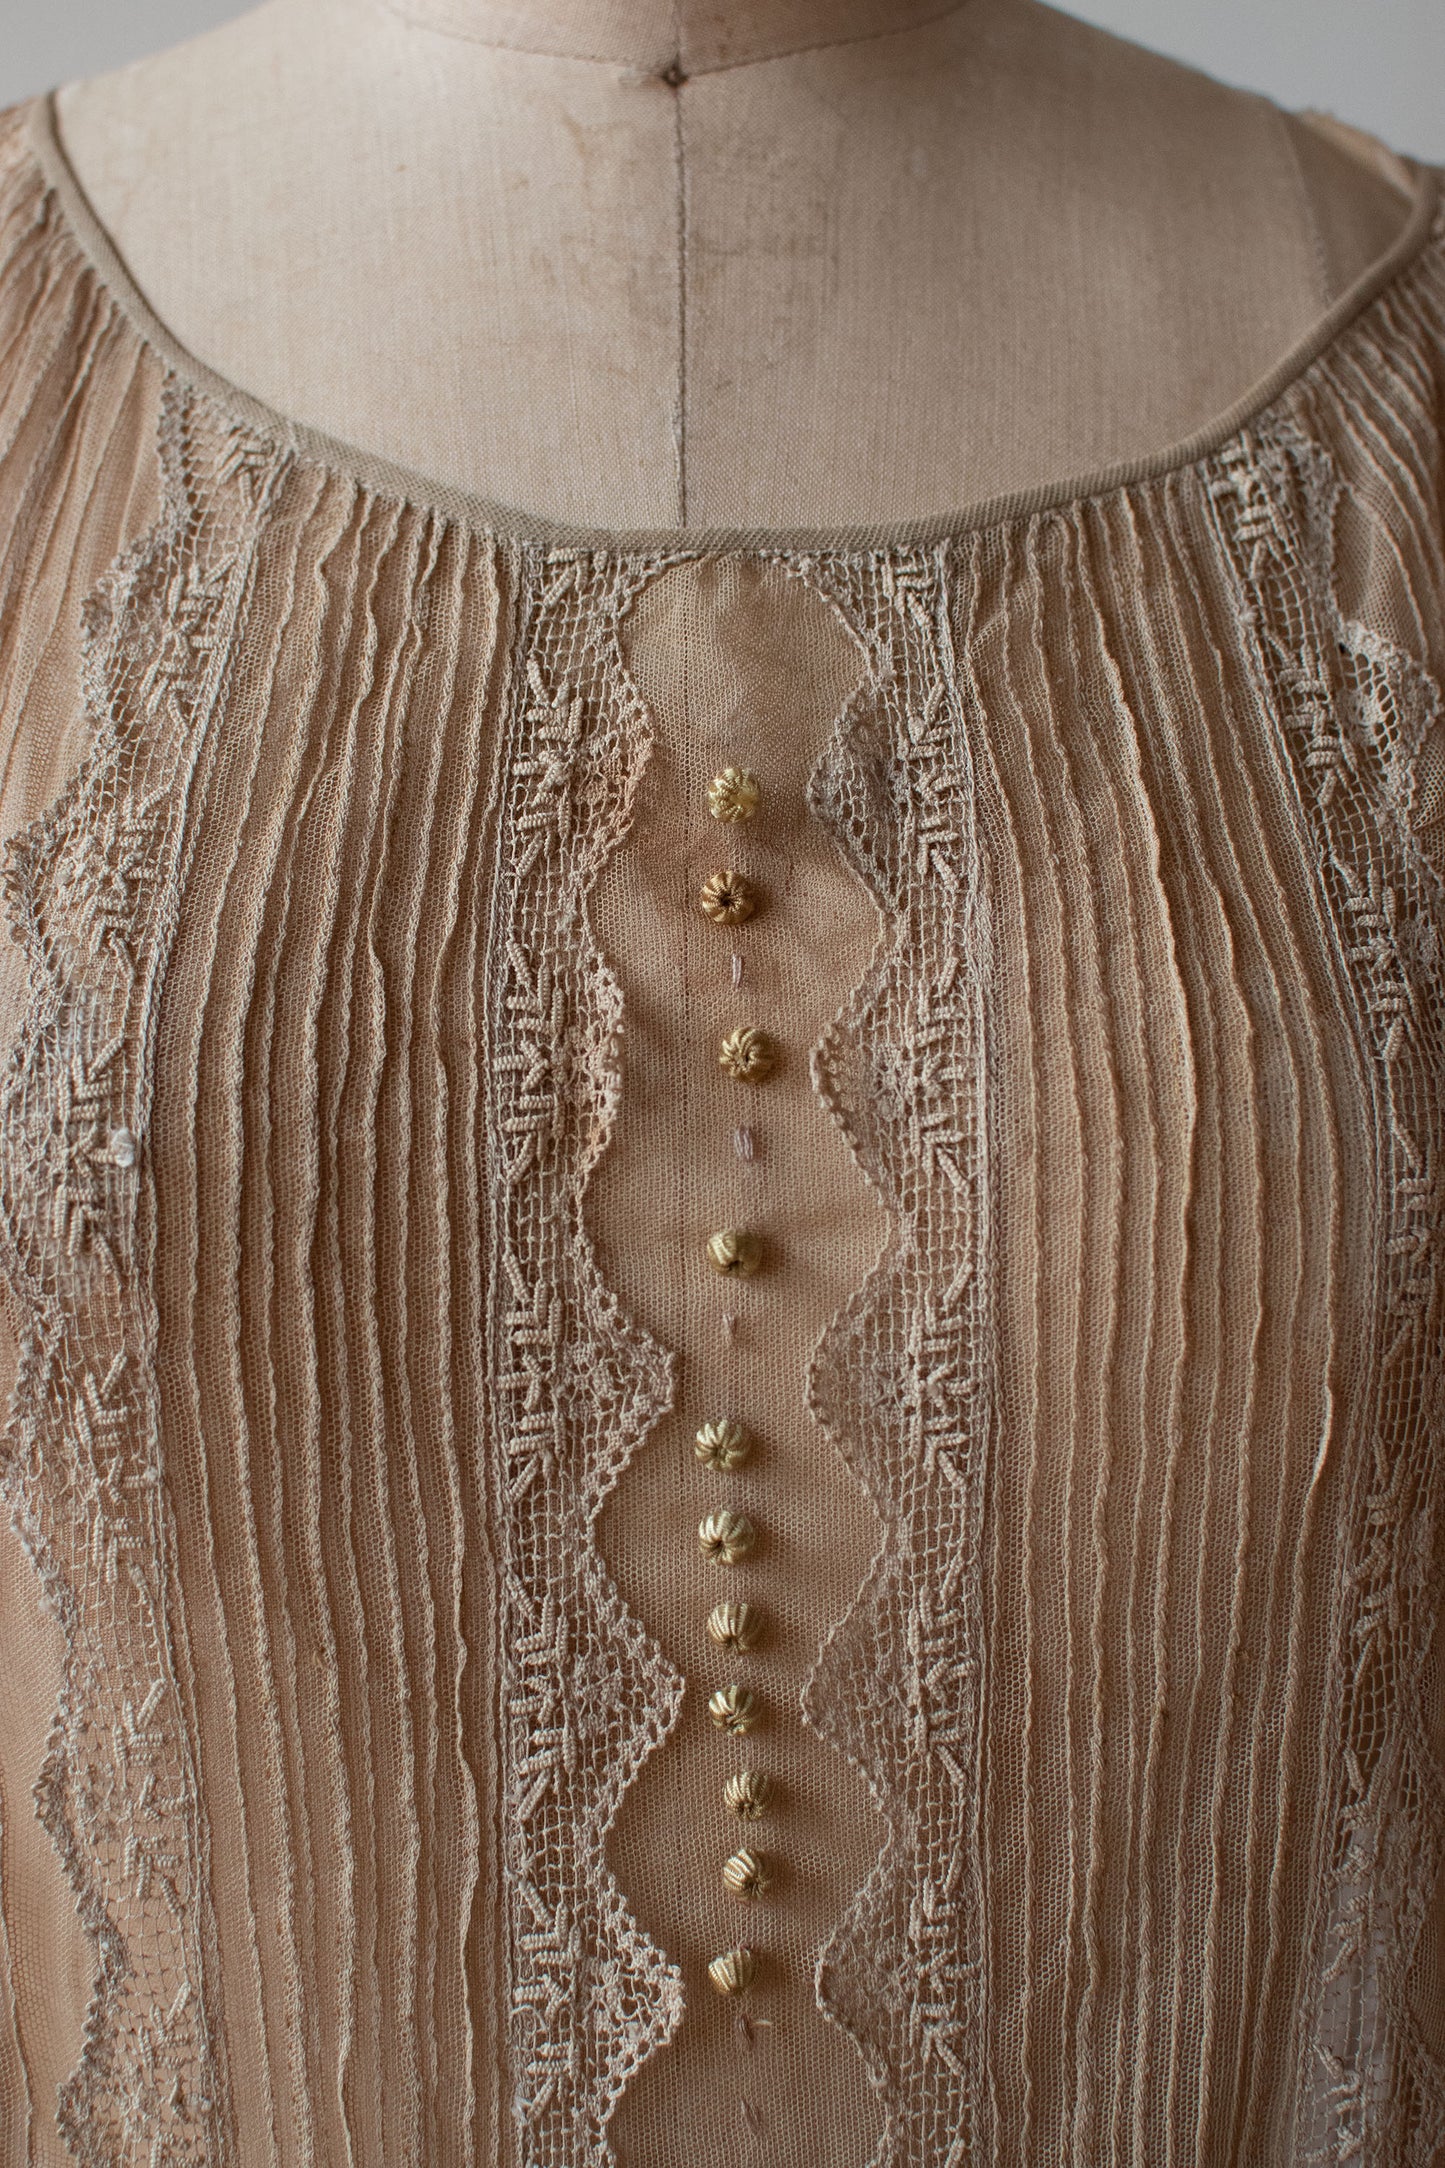 1910s Ecru Lace Dress